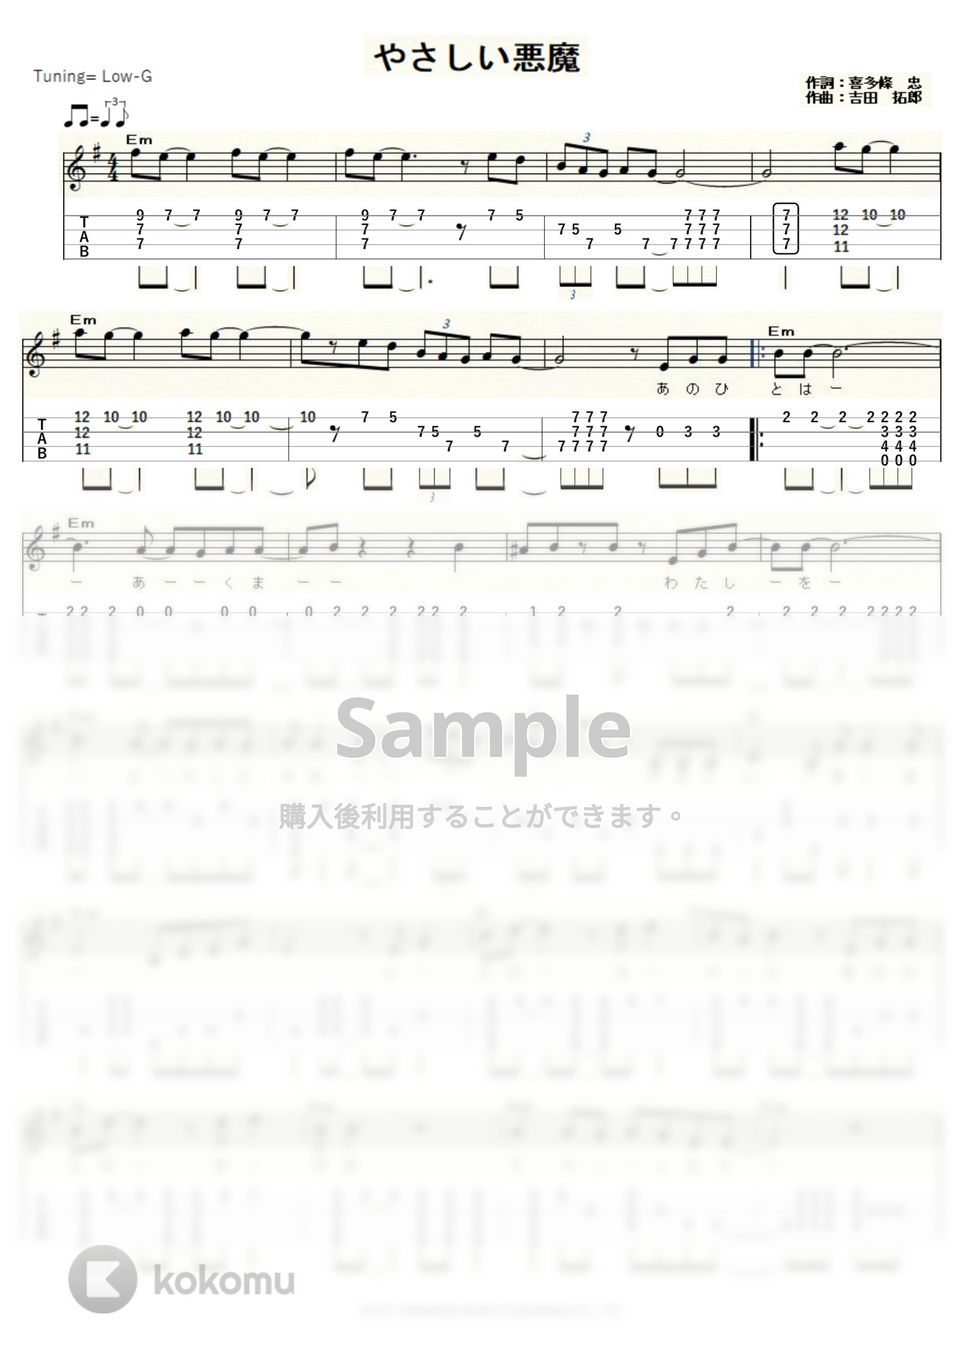 キャンディーズ - やさしい悪魔 (ｳｸﾚﾚｿﾛ / Low-G / 中級) by ukulelepapa